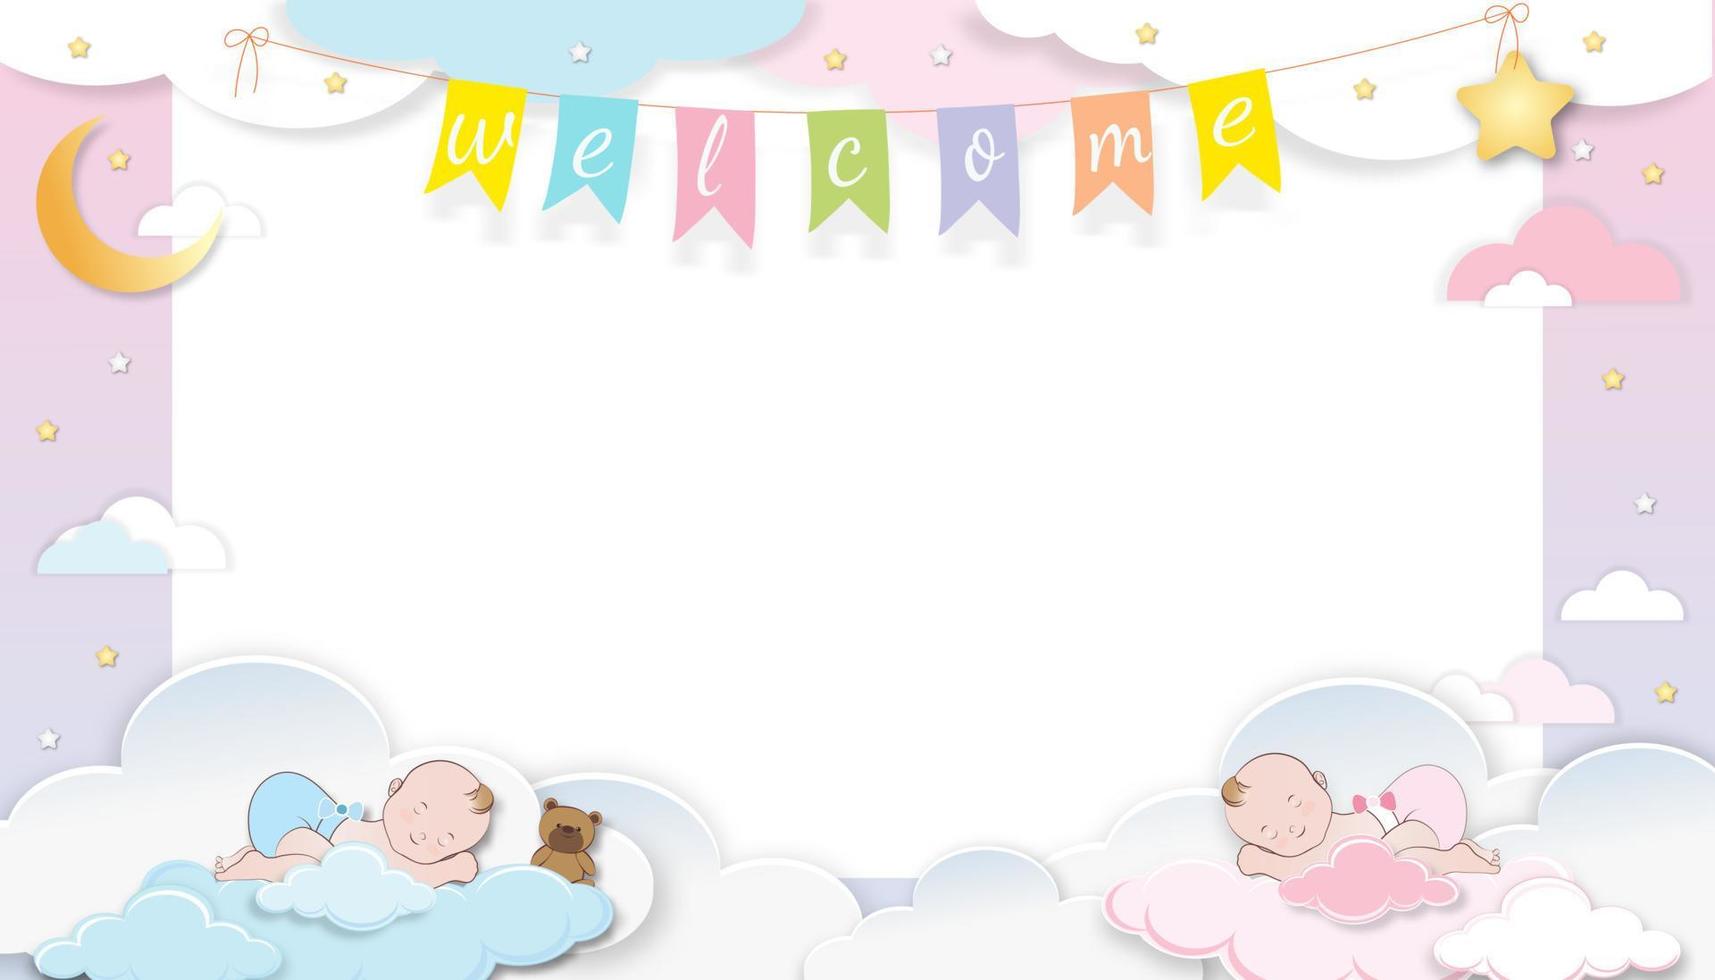 tarjeta de ducha de bebé, lindo niño gemelo, niña durmiendo en una nube esponjosa con luna creciente y estrella en el fondo del cielo rosa, fondo de paisaje de nubes cortado en papel vectorial con espacio de copia para la foto del bebé recién nacido vector